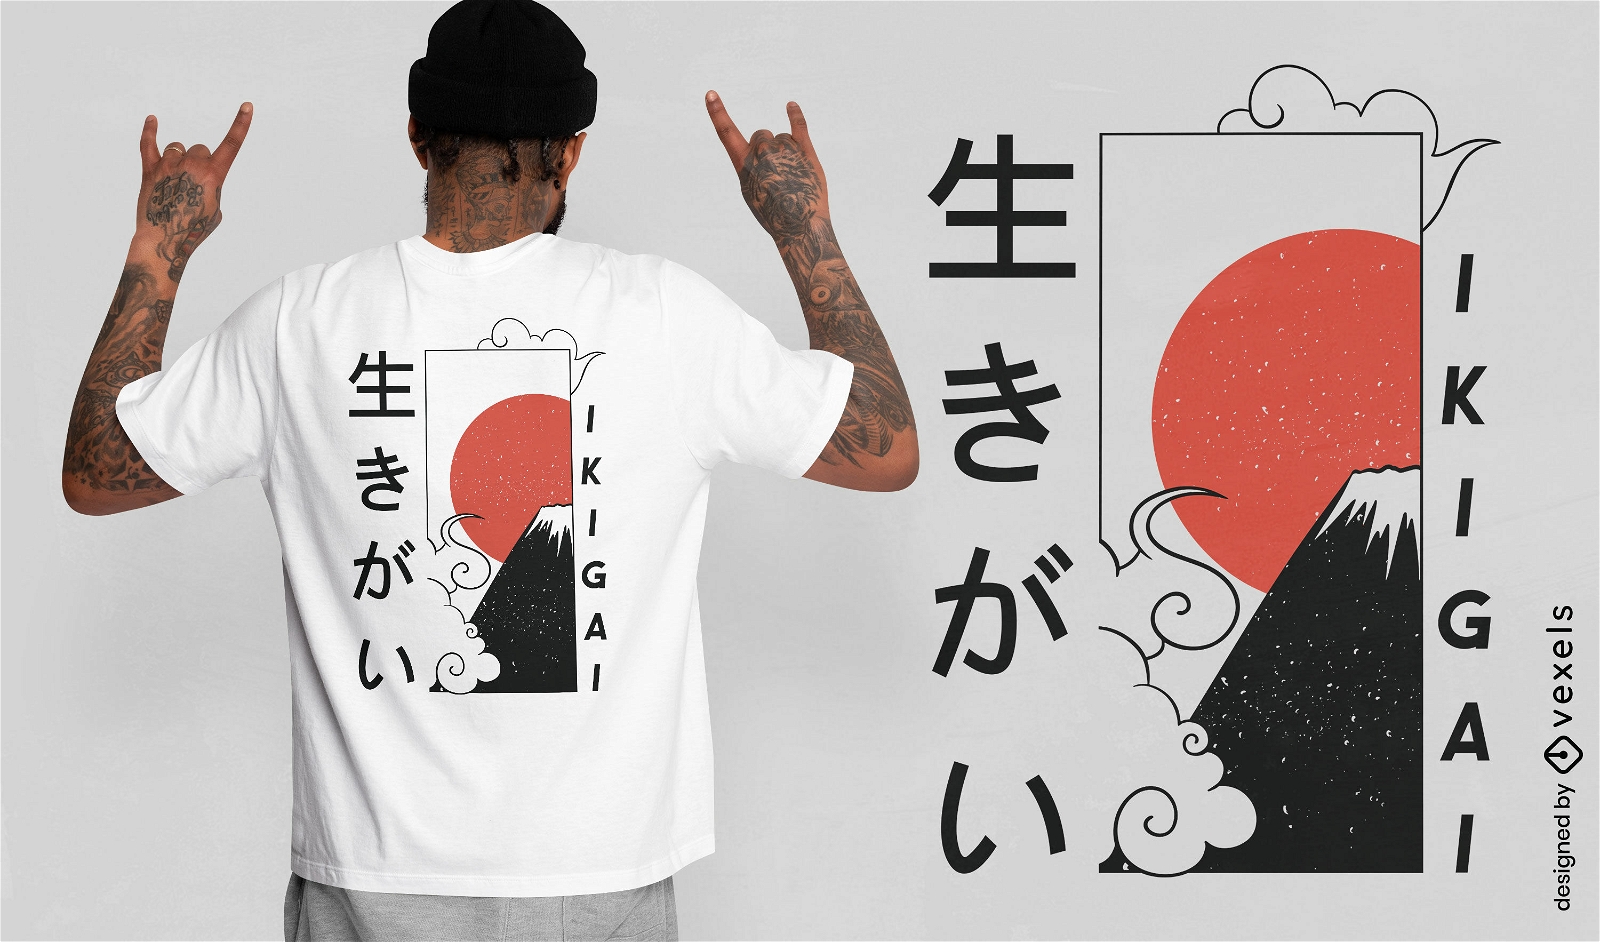 Ikigai japanisches Zitat-T-Shirt-Design